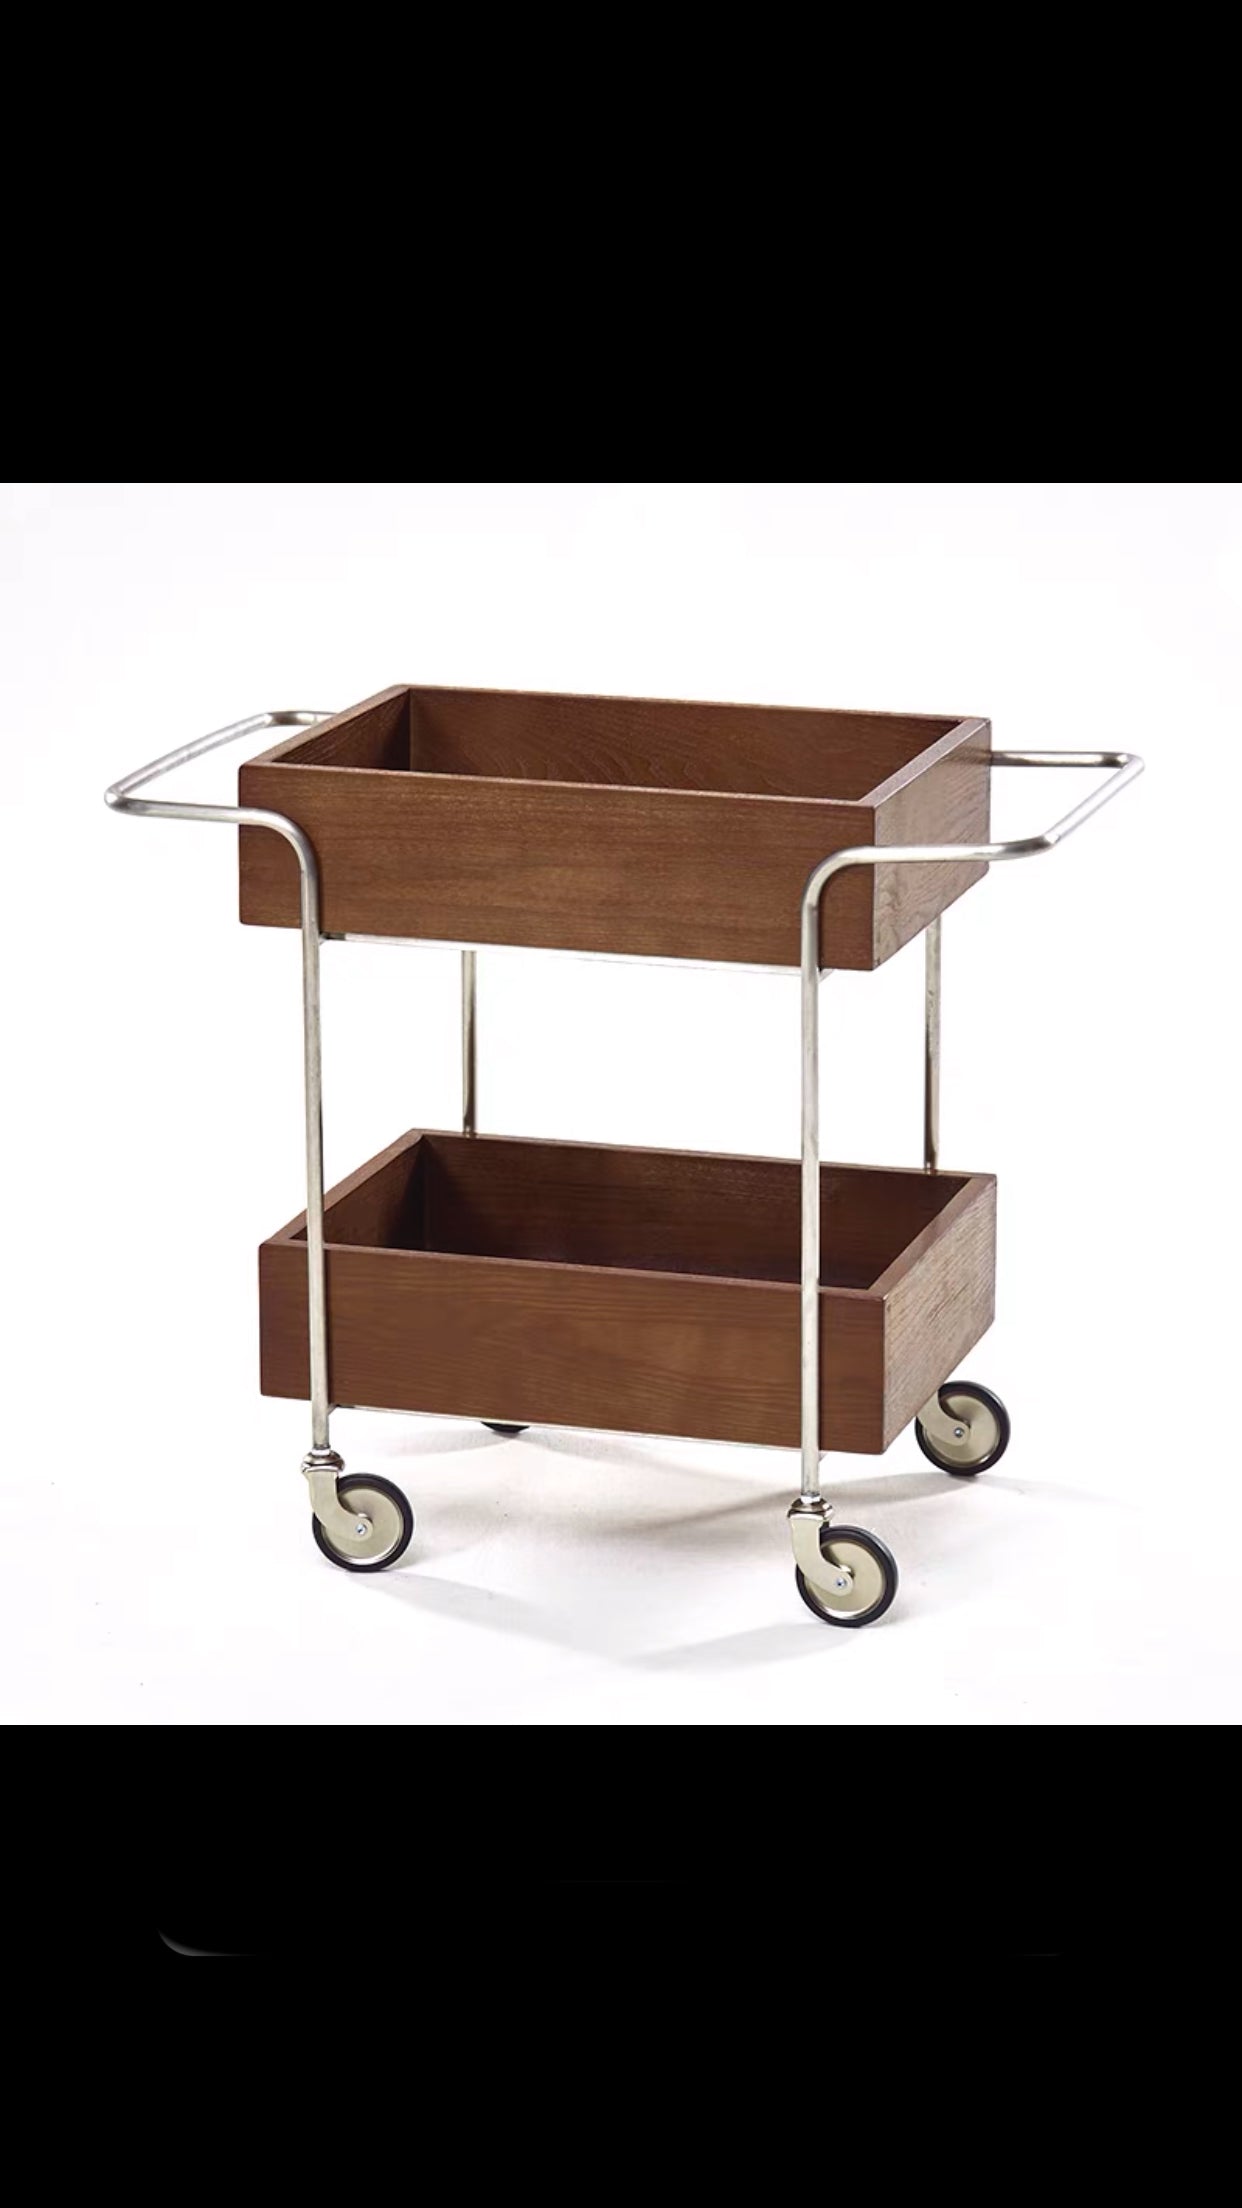 Emer Wooden Bar Cart - 4 Seasons Home Gadgets